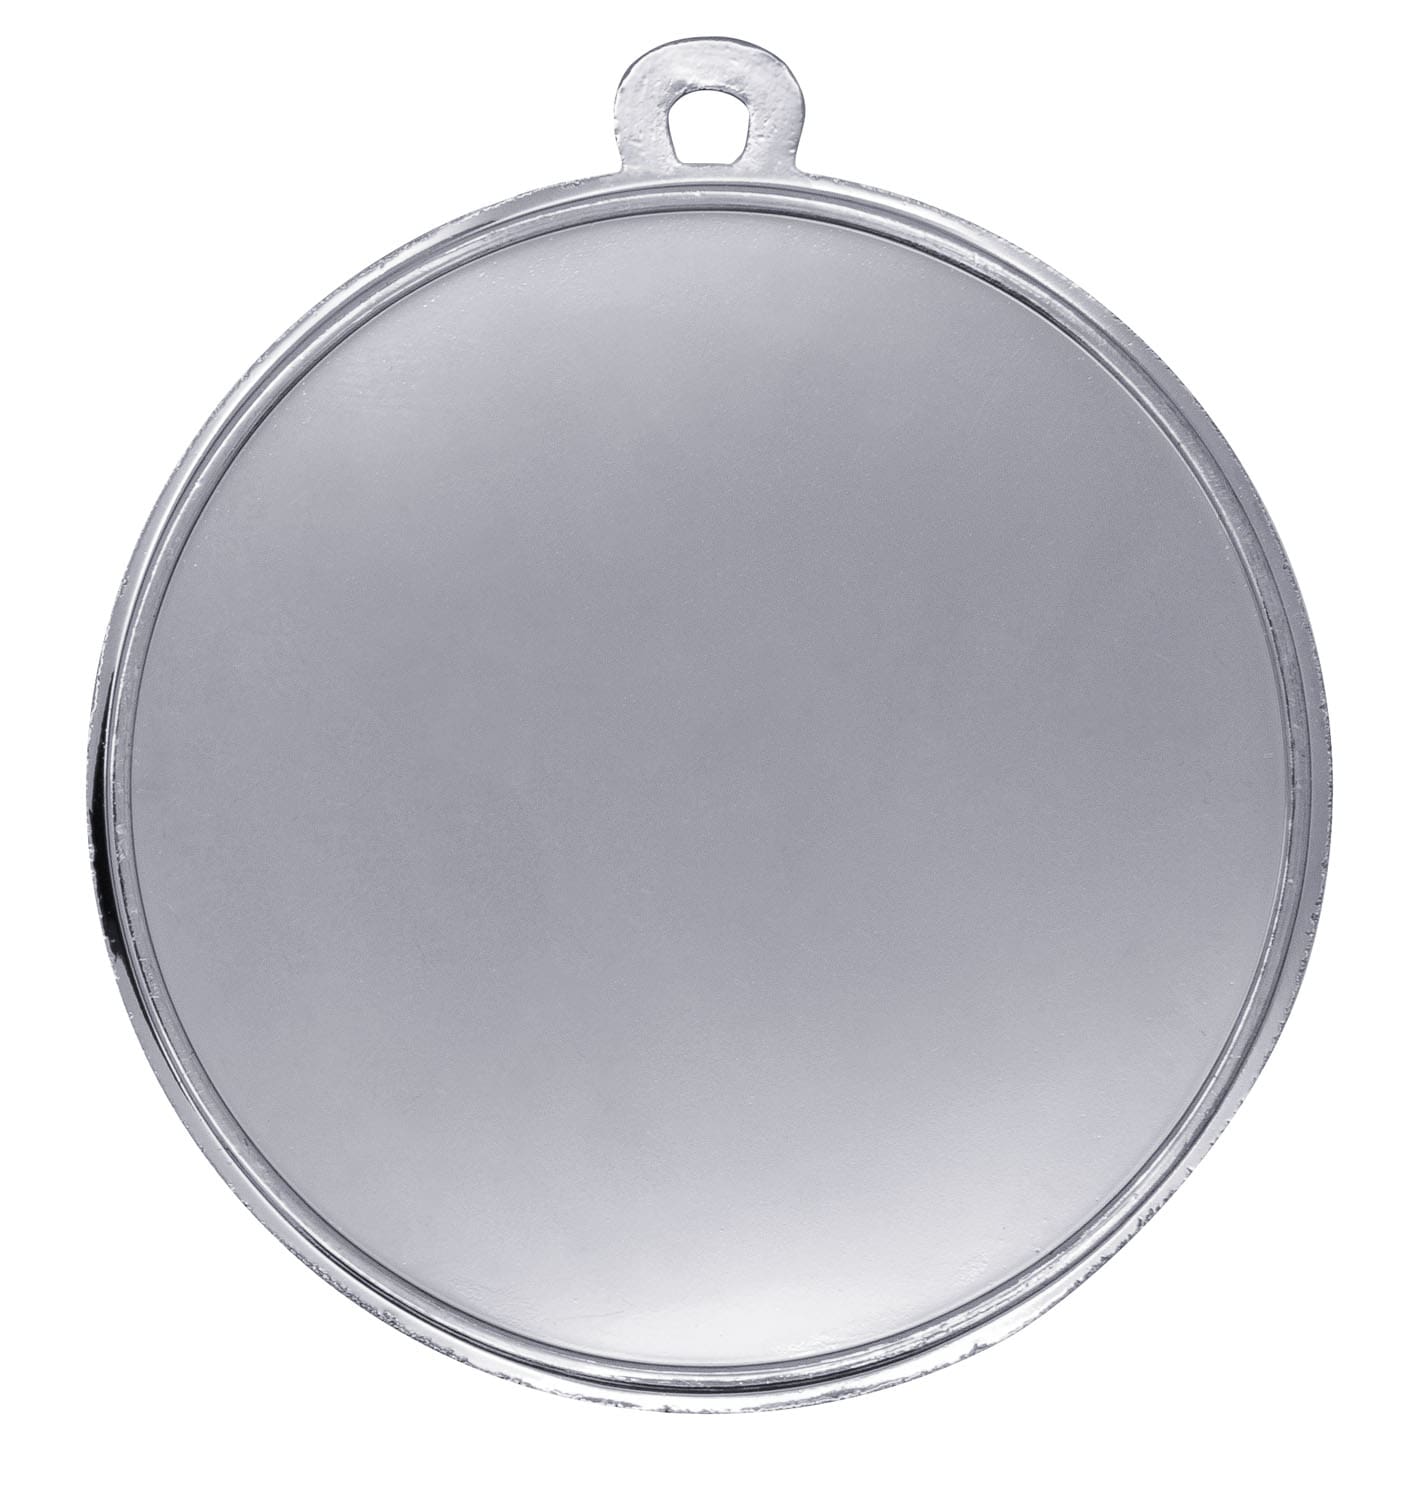 Radsport Medaille "Brixia" Ø 32mm mit Wunschemblem und Band